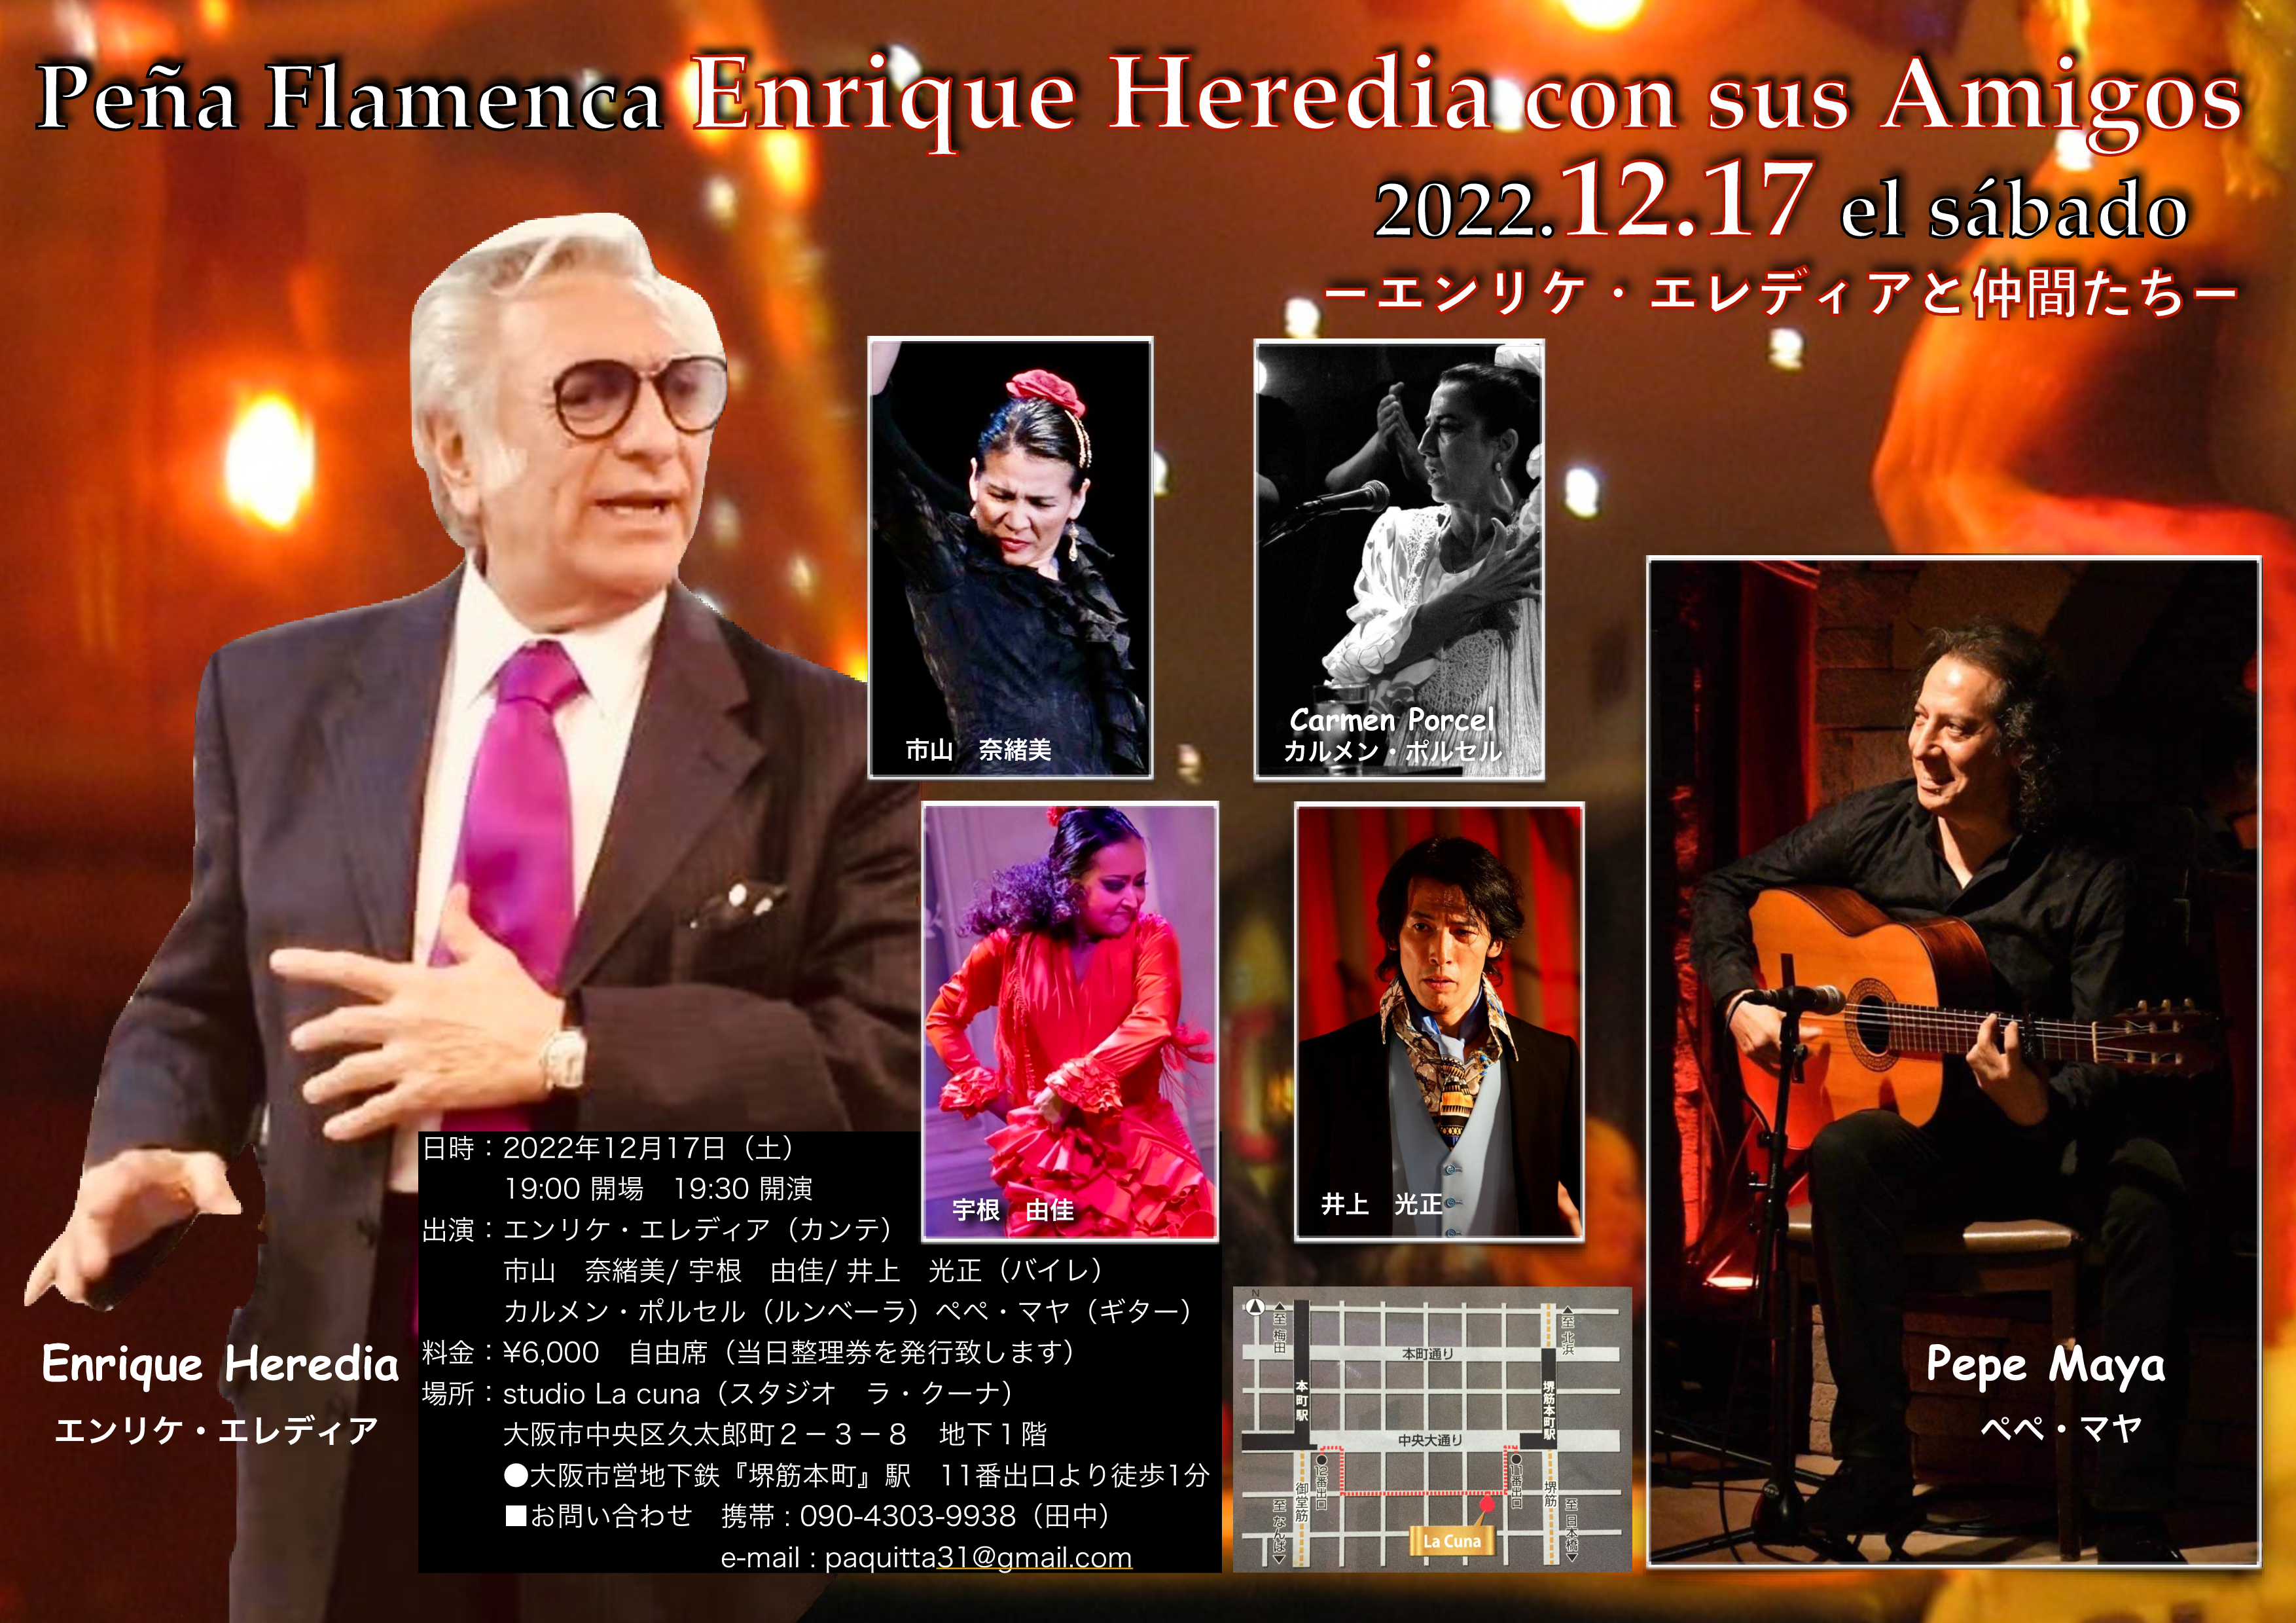 2022年12月17日(土)Peña Flamenca Enrique Heredia con sus Amigos -エンリケ・エレディアと仲間たち-開催